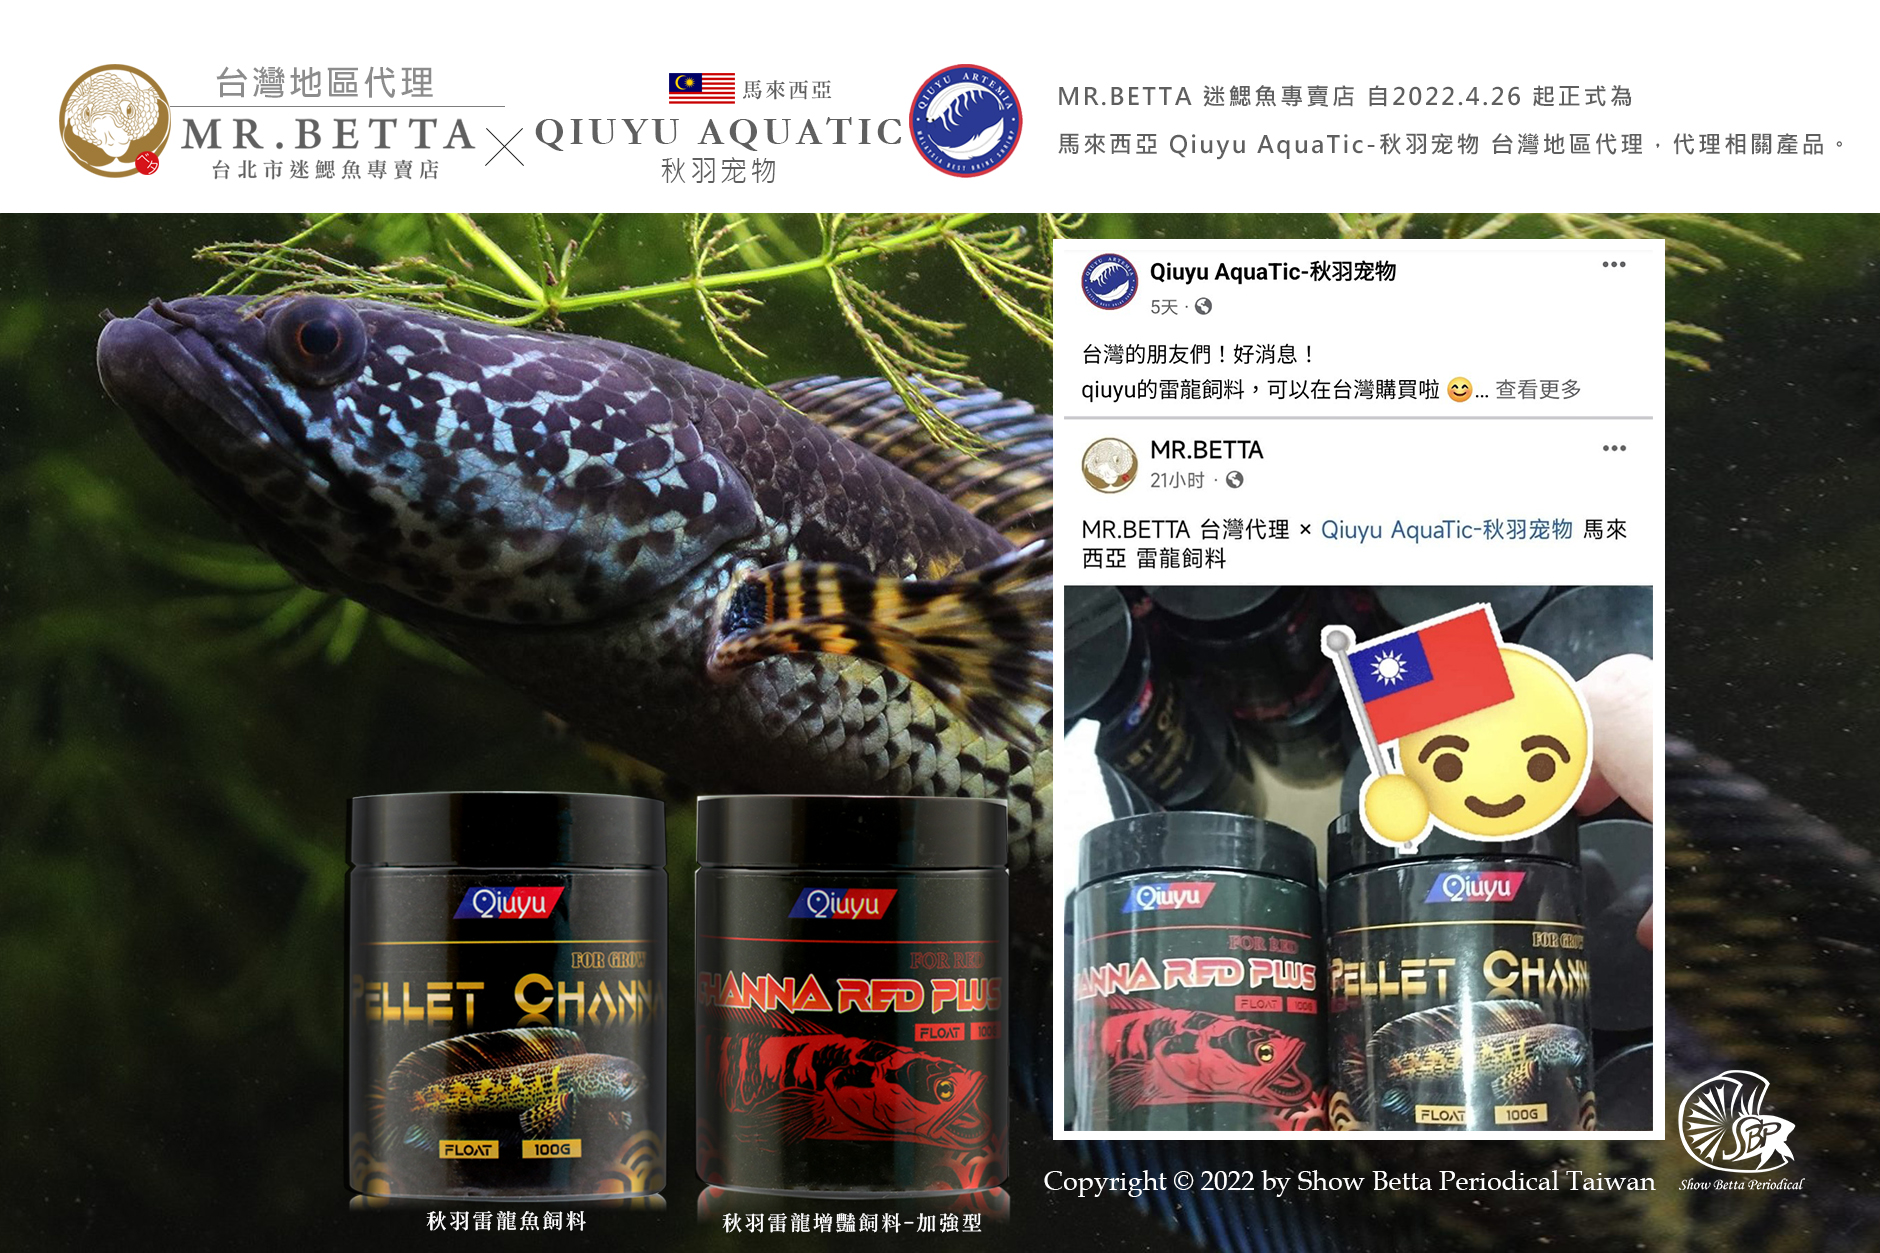 MR.BETTA 迷鰓魚專賣店 自2022.4.26 起正式為 馬來西亞 Qiuyu AquaTic-秋羽宠物 台灣區代理